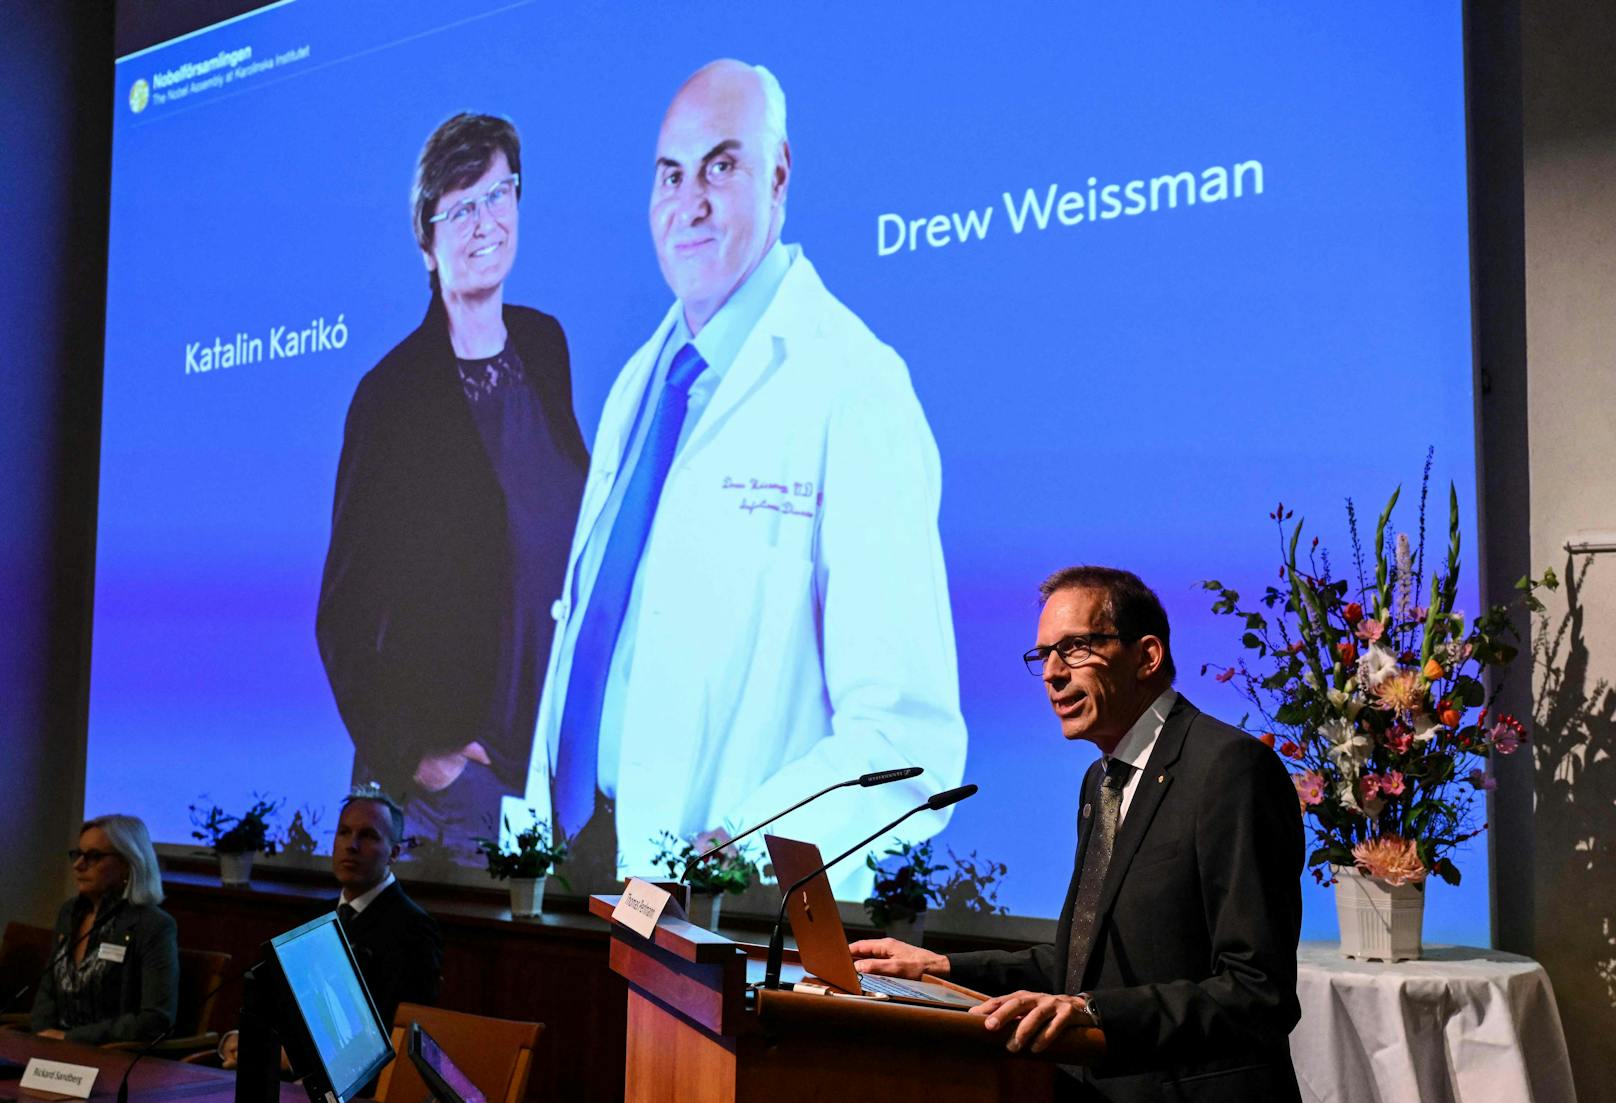  Die Ungarin Katalin Kariko und der US-Amerikaner Drew Weissman wurden mit dem diesjährigen Medizin-Nobelpreis ausgezeichnet. 